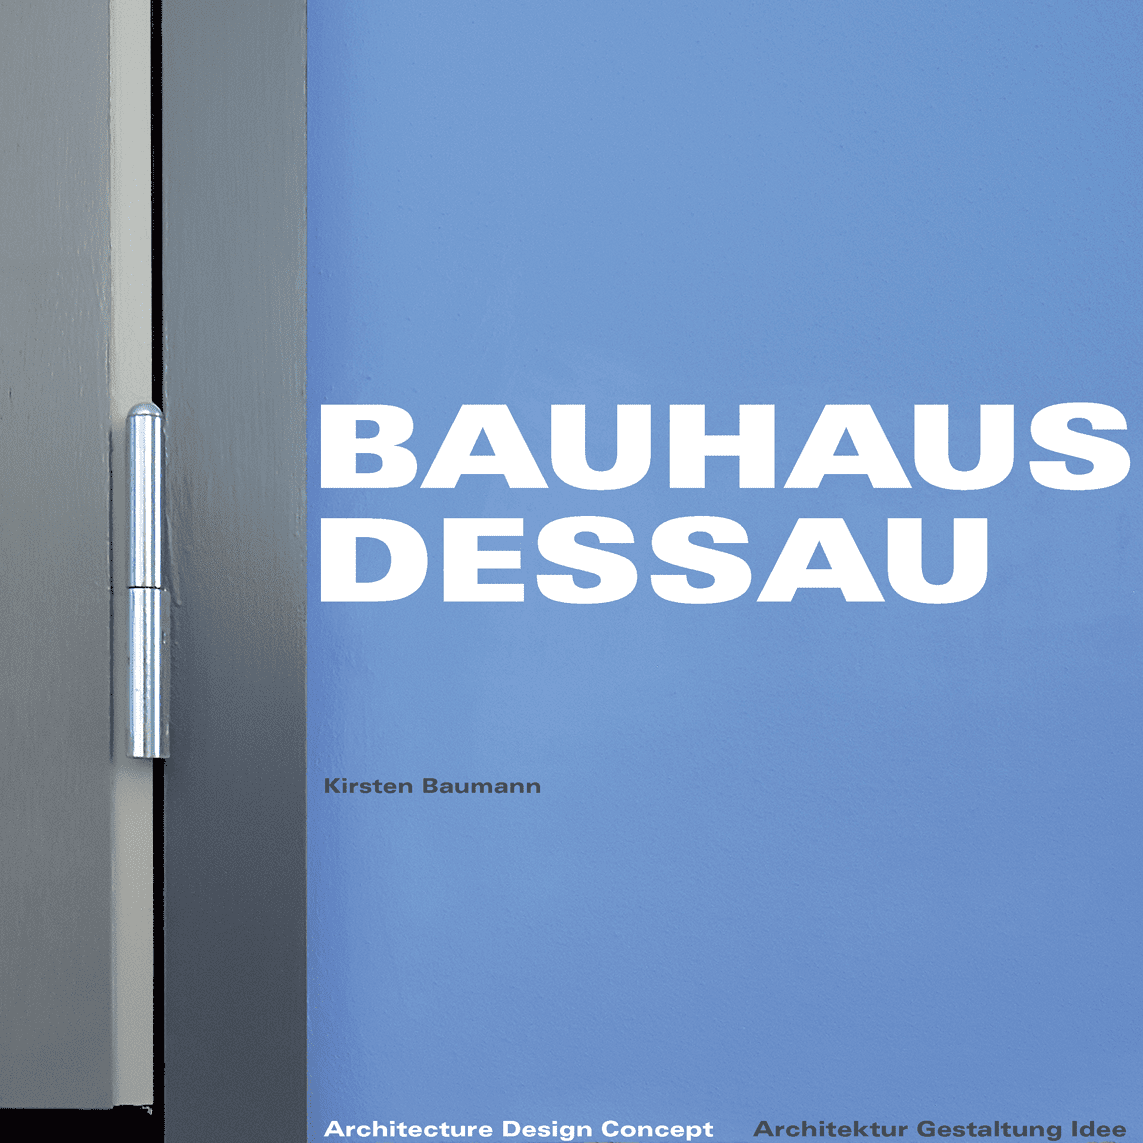 Bauhaus Dessau की तस्वीर